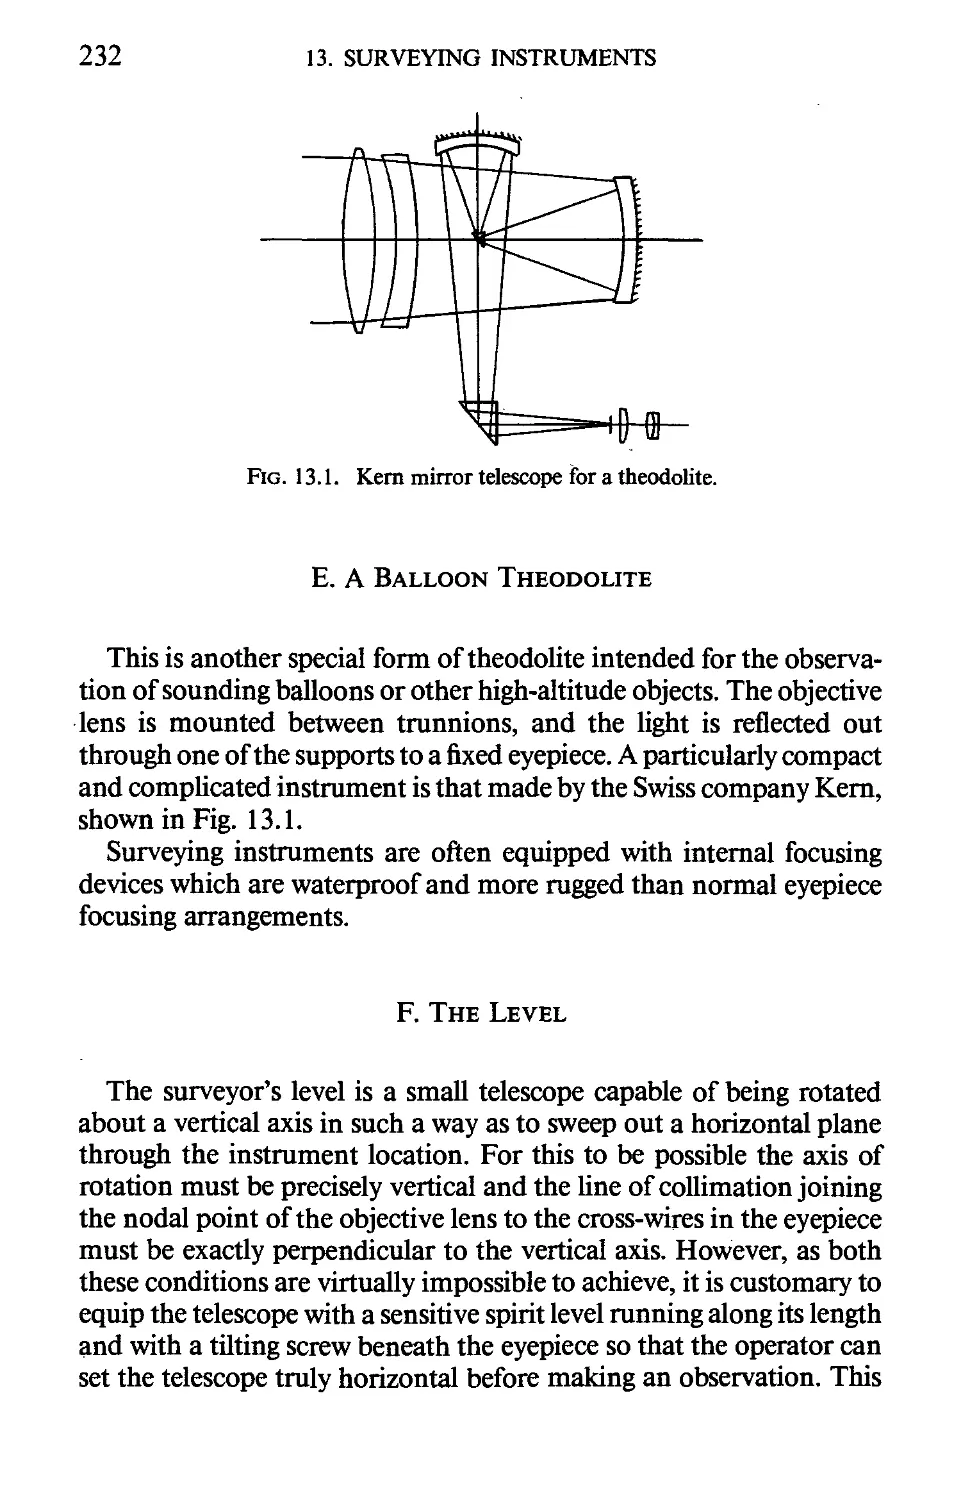 E. A Balloon Theodolite
F. The Level